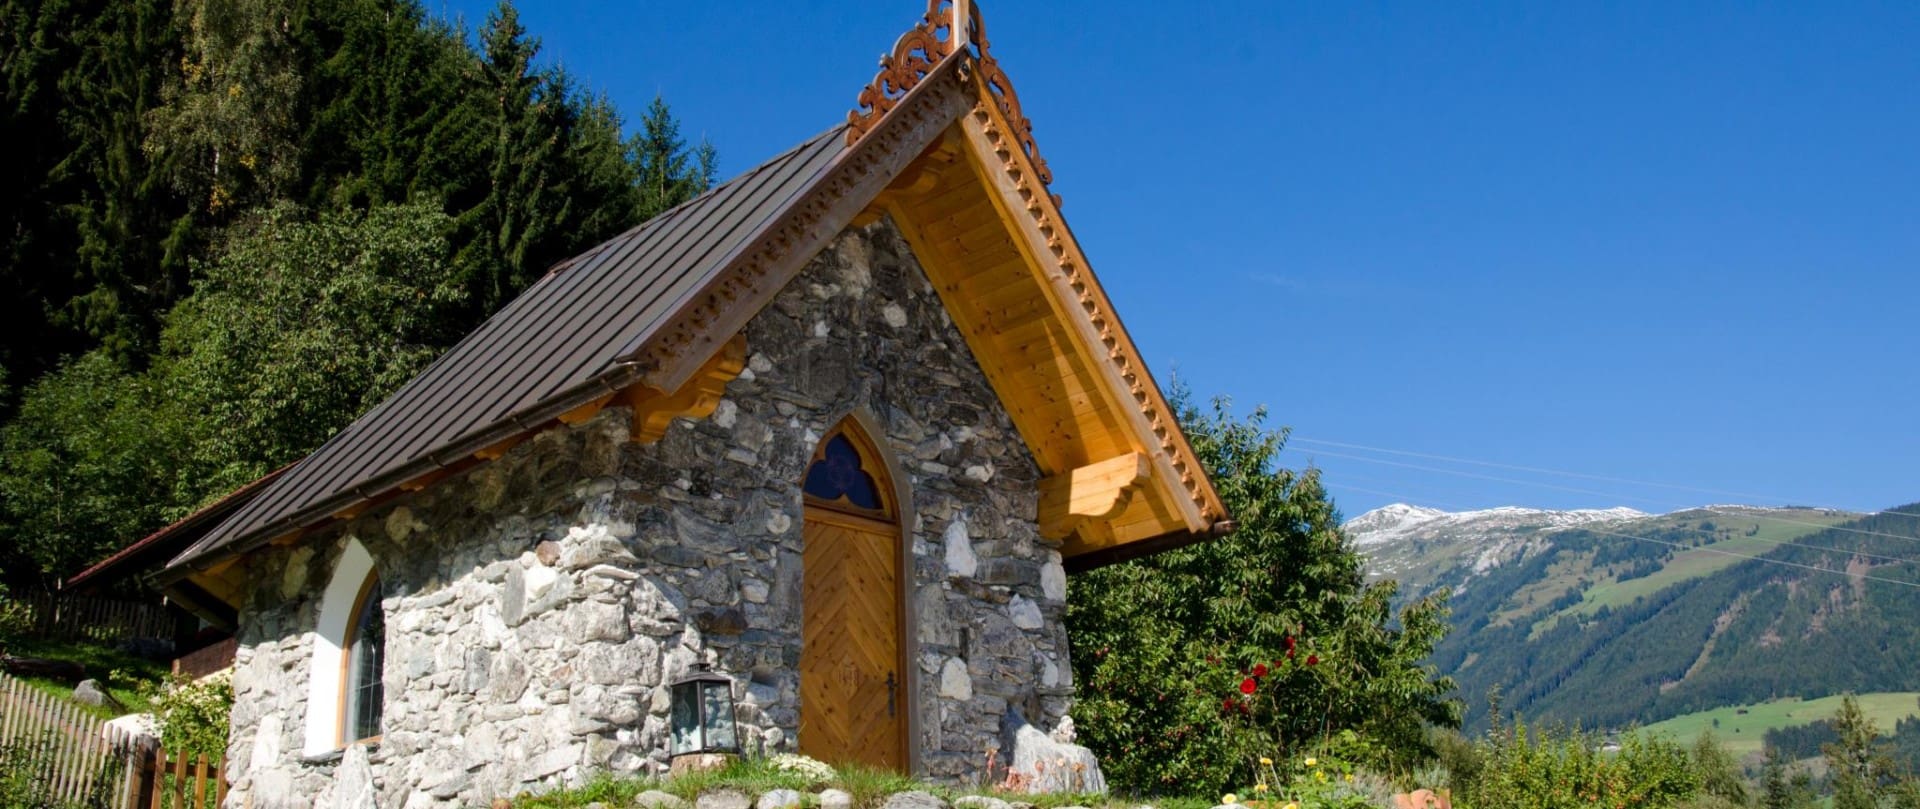 Die Christophoruskapelle am Kapellenweg mit traditioneller Steinarchitektur und einem kunstvollen Holzdach